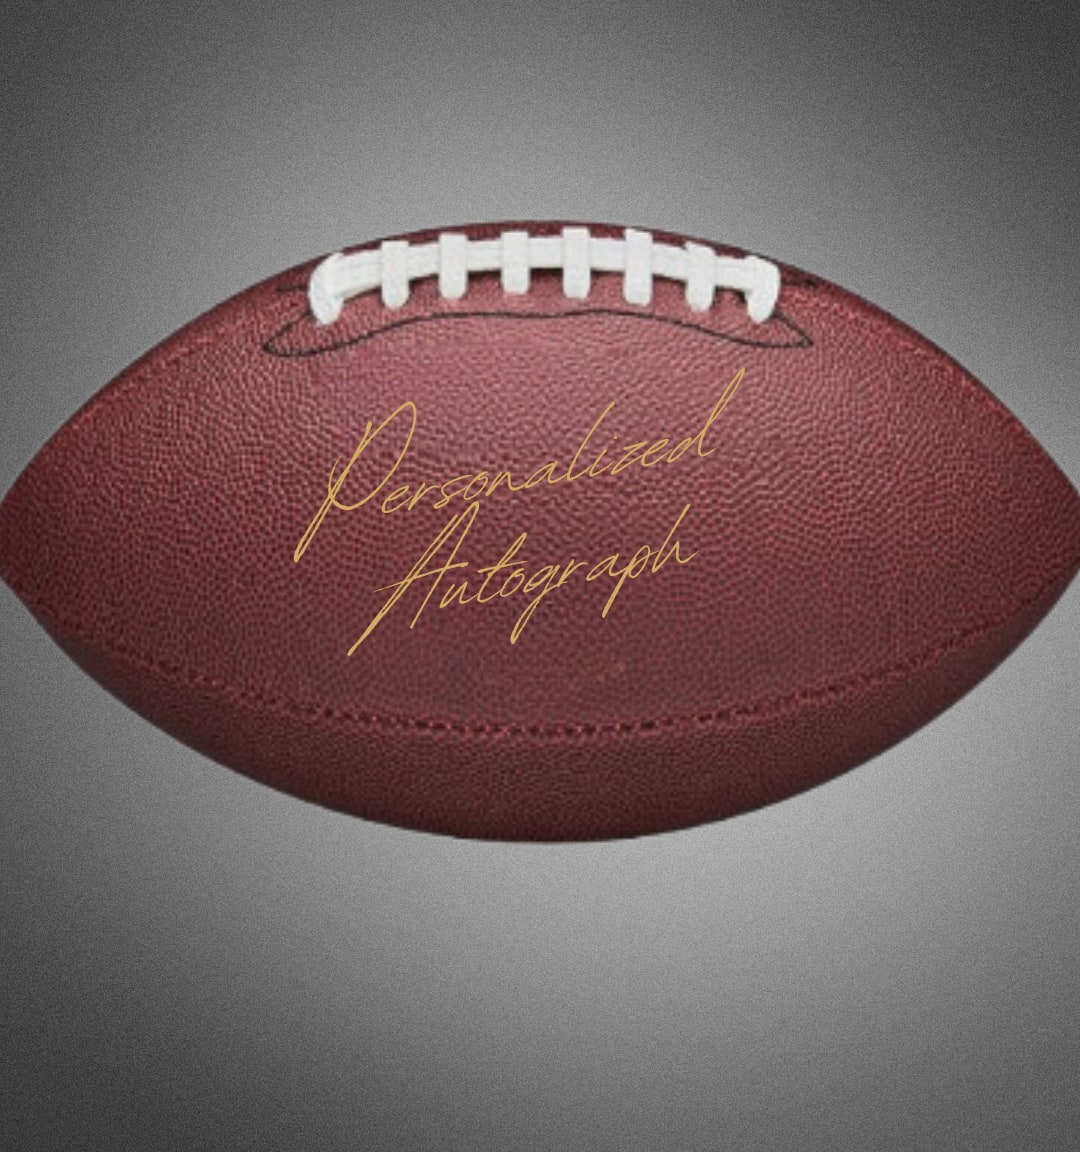 Limited Edition Eli Apple Autographed Football